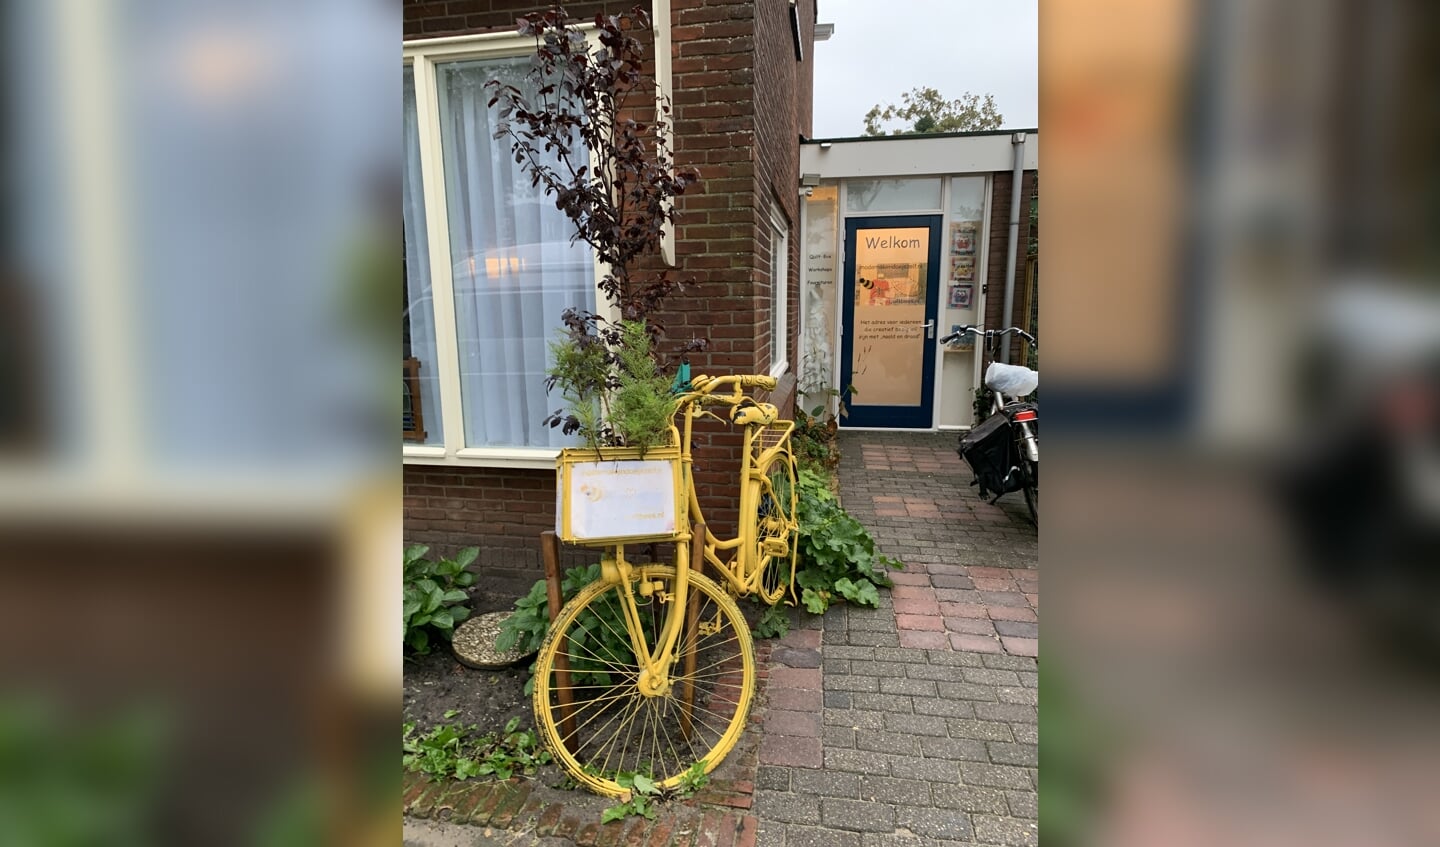 De gele fiets van (de helaas afgelaste Kunstfietsroute) staat te 'shinen' voor de naaischool.